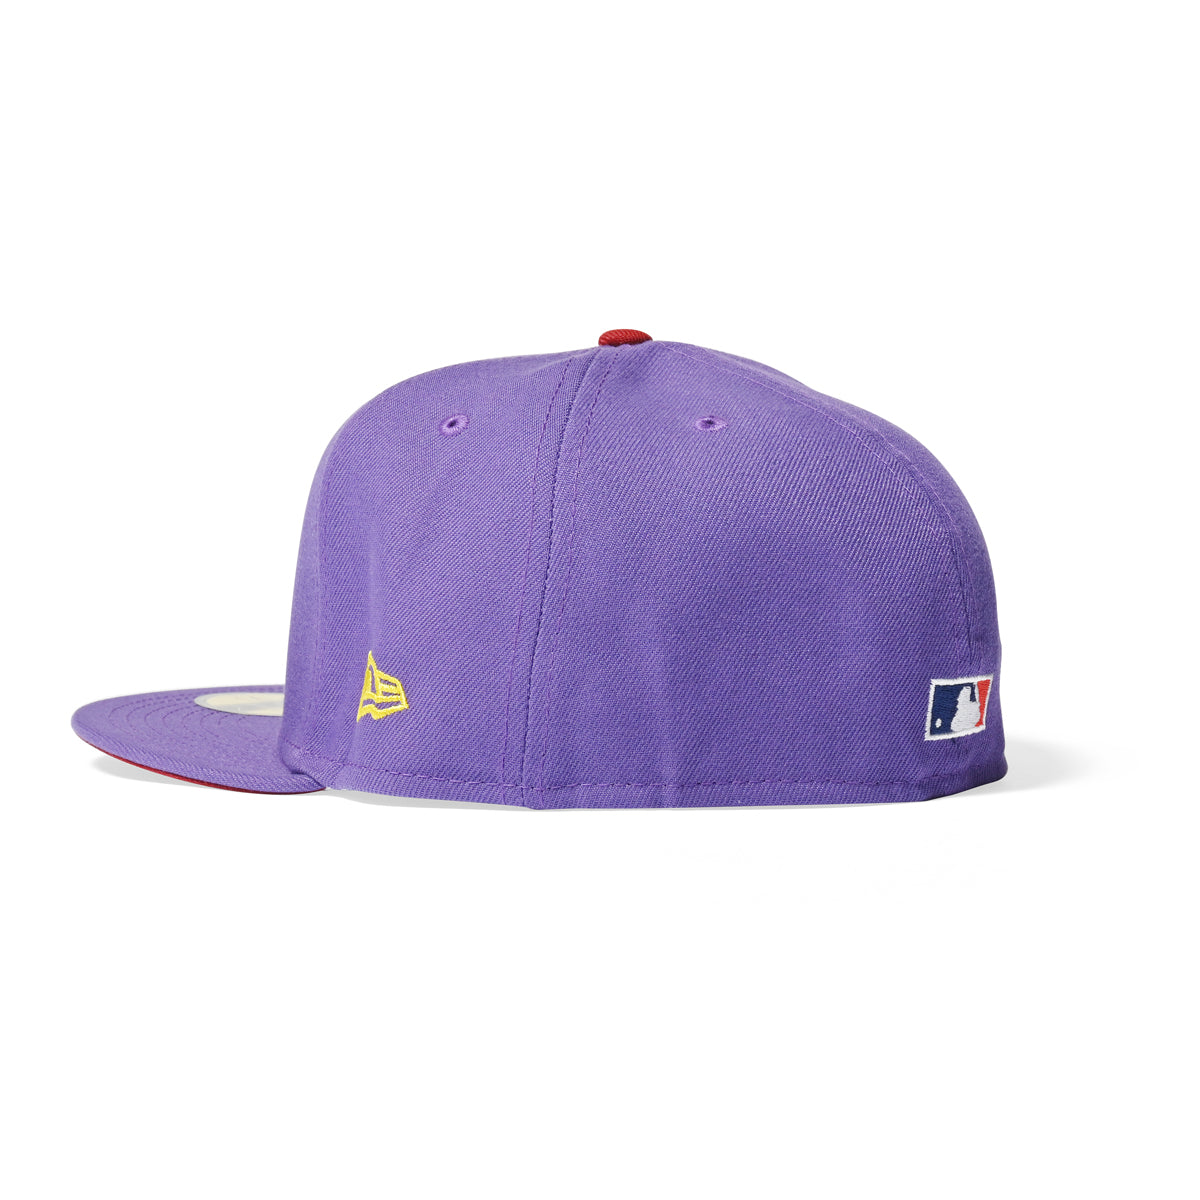 新時代波士頓紅襪隊 - 全明星賽 1999 59FIFTY 紫色 [NE054]